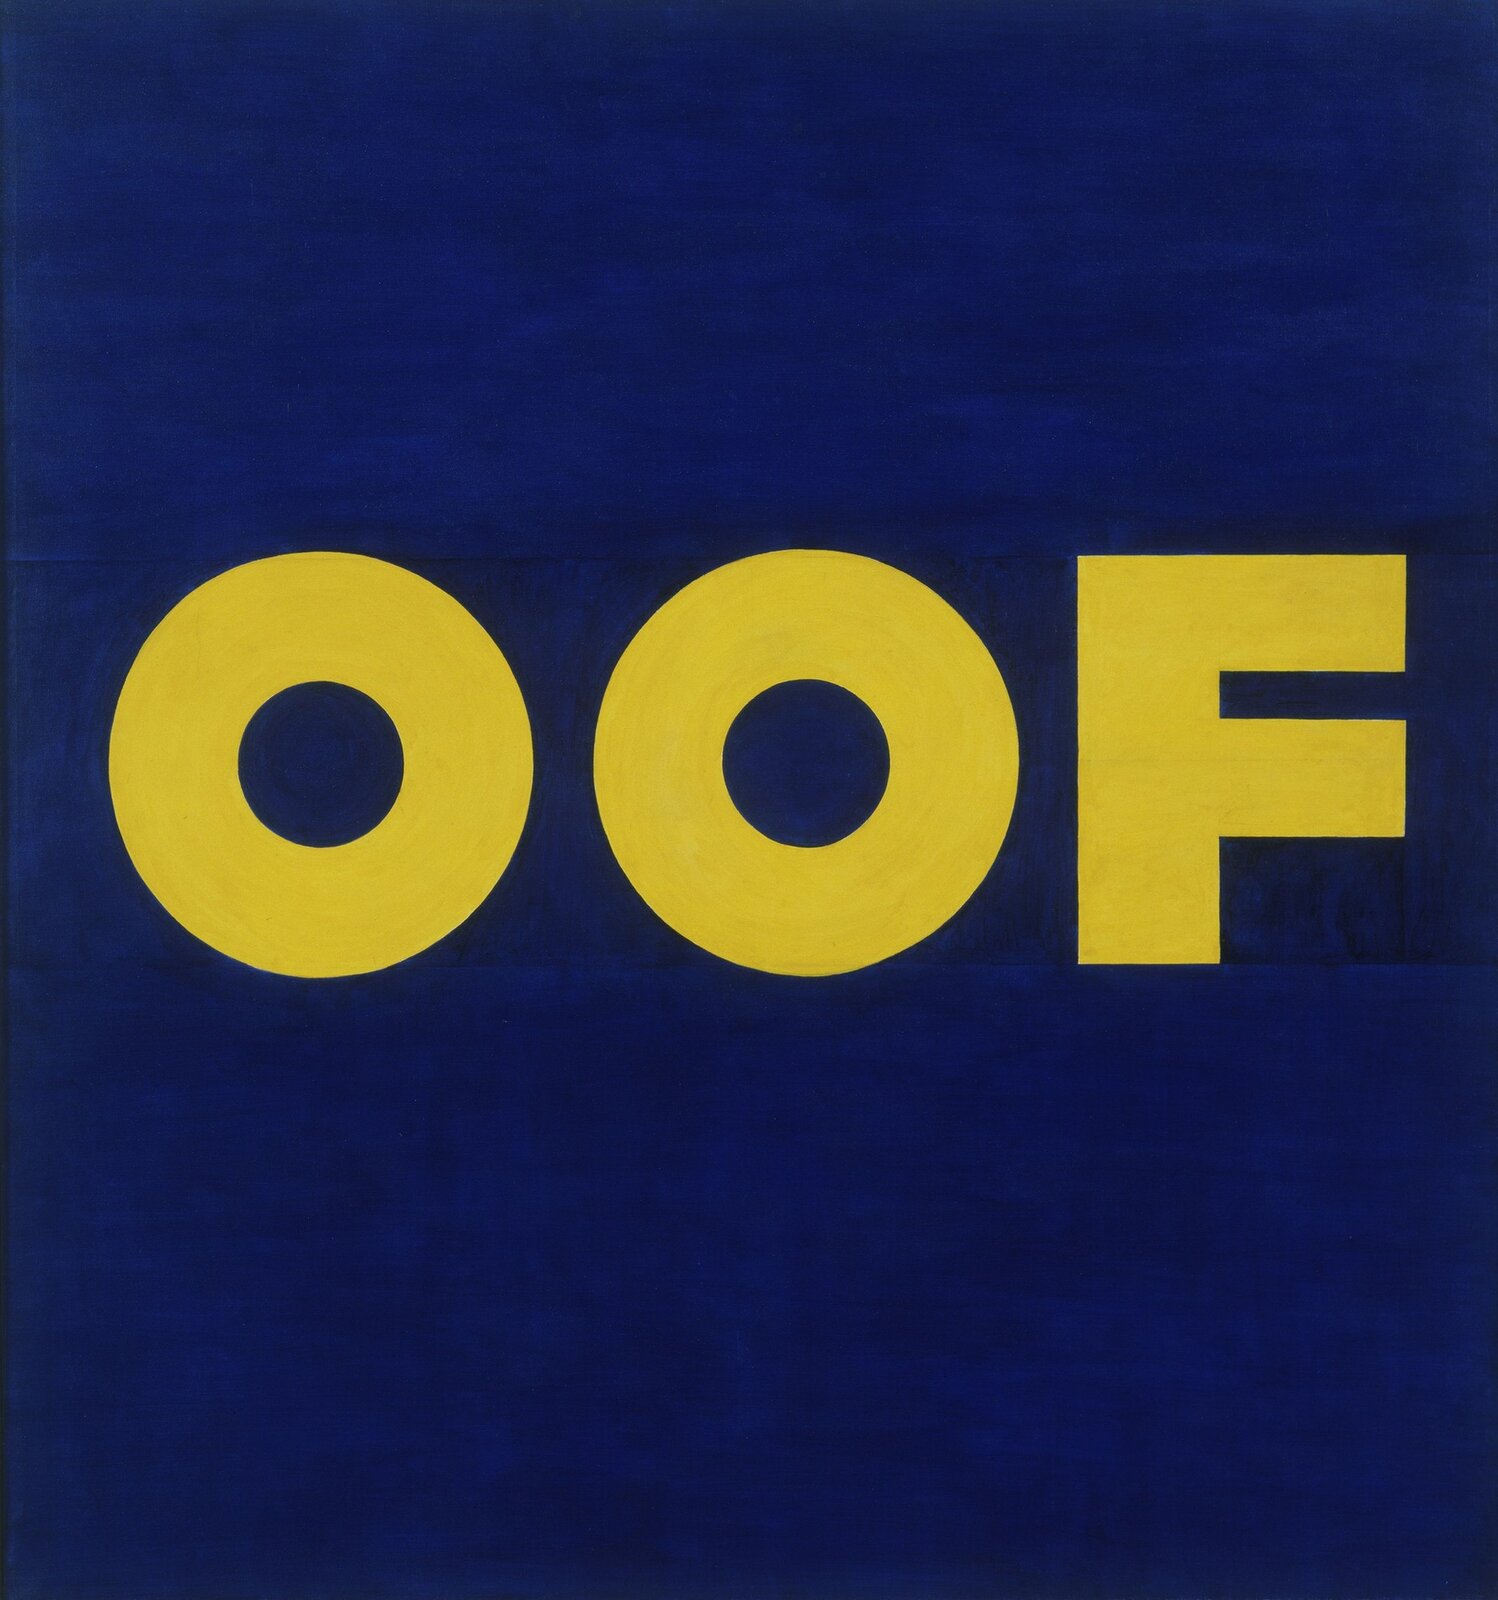 Ilustracja przedstawia obraz Edwarda Ruscha "OOF". Ukazuje wyraz OOF wykonany żółtą majuskułą na ciemnoniebieskim tle. Litery mają jednakową grubość, wysokość i szerokość. Napis umieszczony jest w centrum kwadratu.